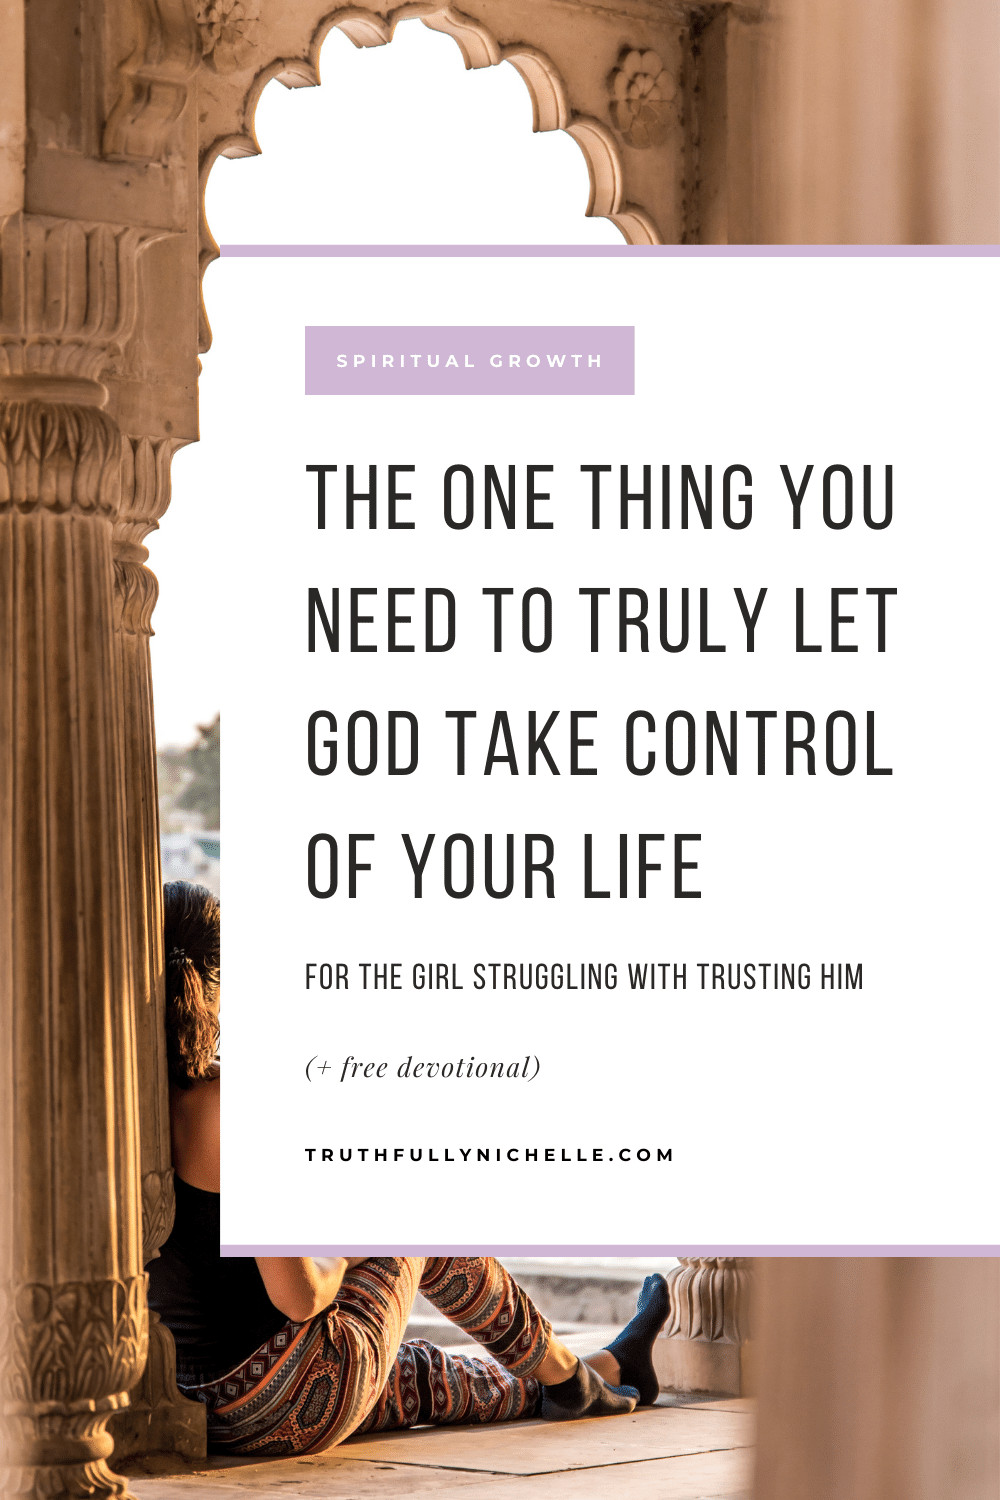 nechat jít a nechat Boha převzít kontrolu, jak nechat Boha převzít kontrolu nad vaším životem, když necháte Boha převzít kontrolu, umožnit Bohu vést, vzdát se kontroly Bohu, nechat Boha ovládat váš život, umožnit Bohu převzít kontrolu, jak dát Bohu kontrolu, Bůh ovládá můj život a osud, jak mít víru v Boha úplně, jak nechat Boha převzít kontrolu, jak plně důvěřovat Bohu, jak důvěřovat Bohu v těžkých dobách duchovní inspirace a povzbuzení